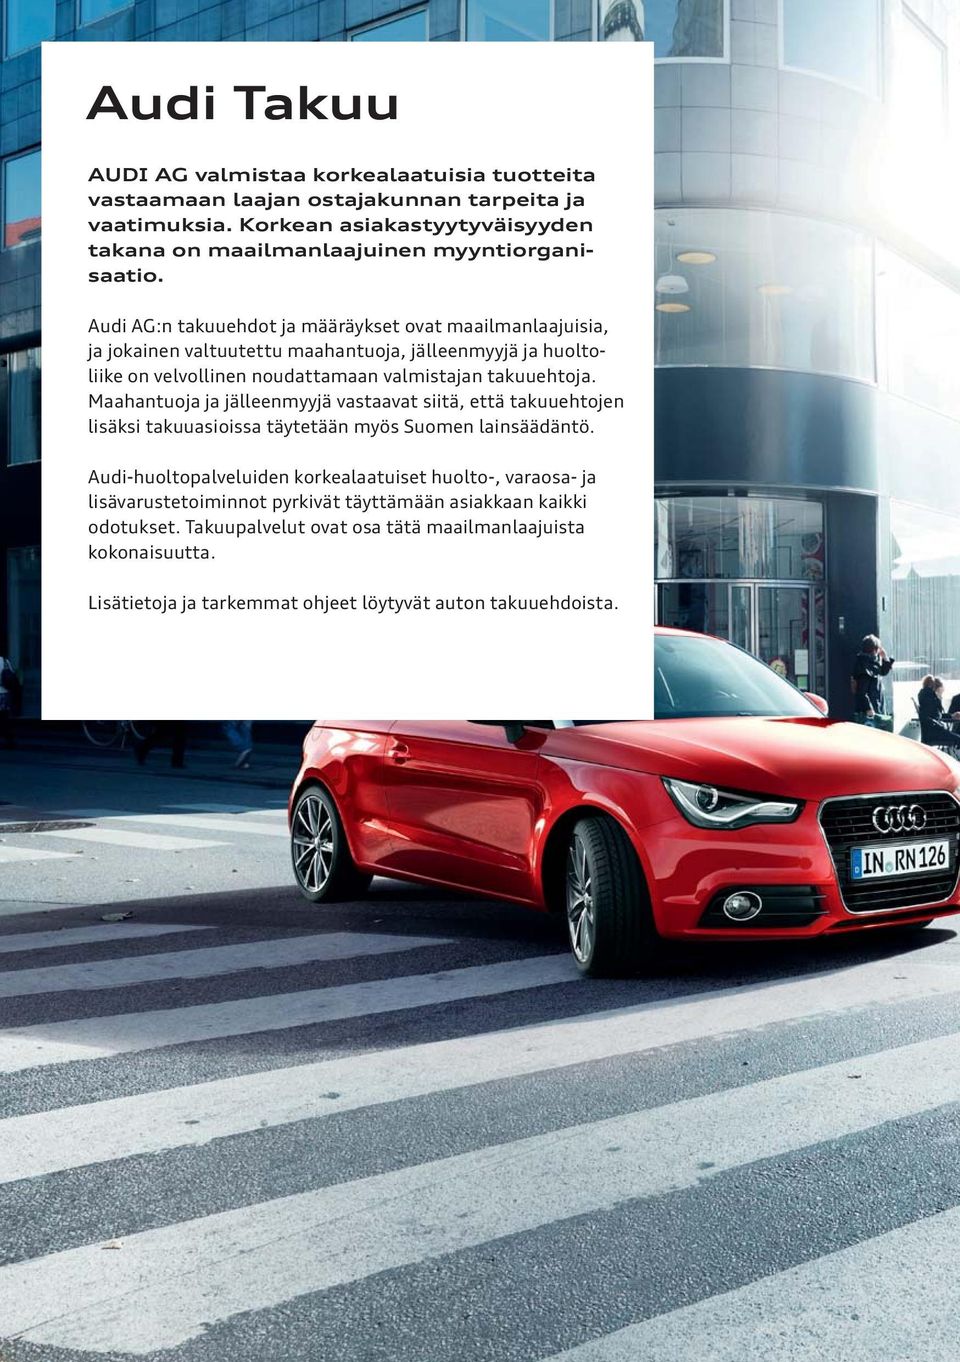 Audi AG:n takuuehdot ja määräykset ovat maailmanlaajuisia, ja jokainen valtuutettu maahantuoja, jälleenmyyjä ja huoltoliike on velvollinen noudattamaan valmistajan takuuehtoja.